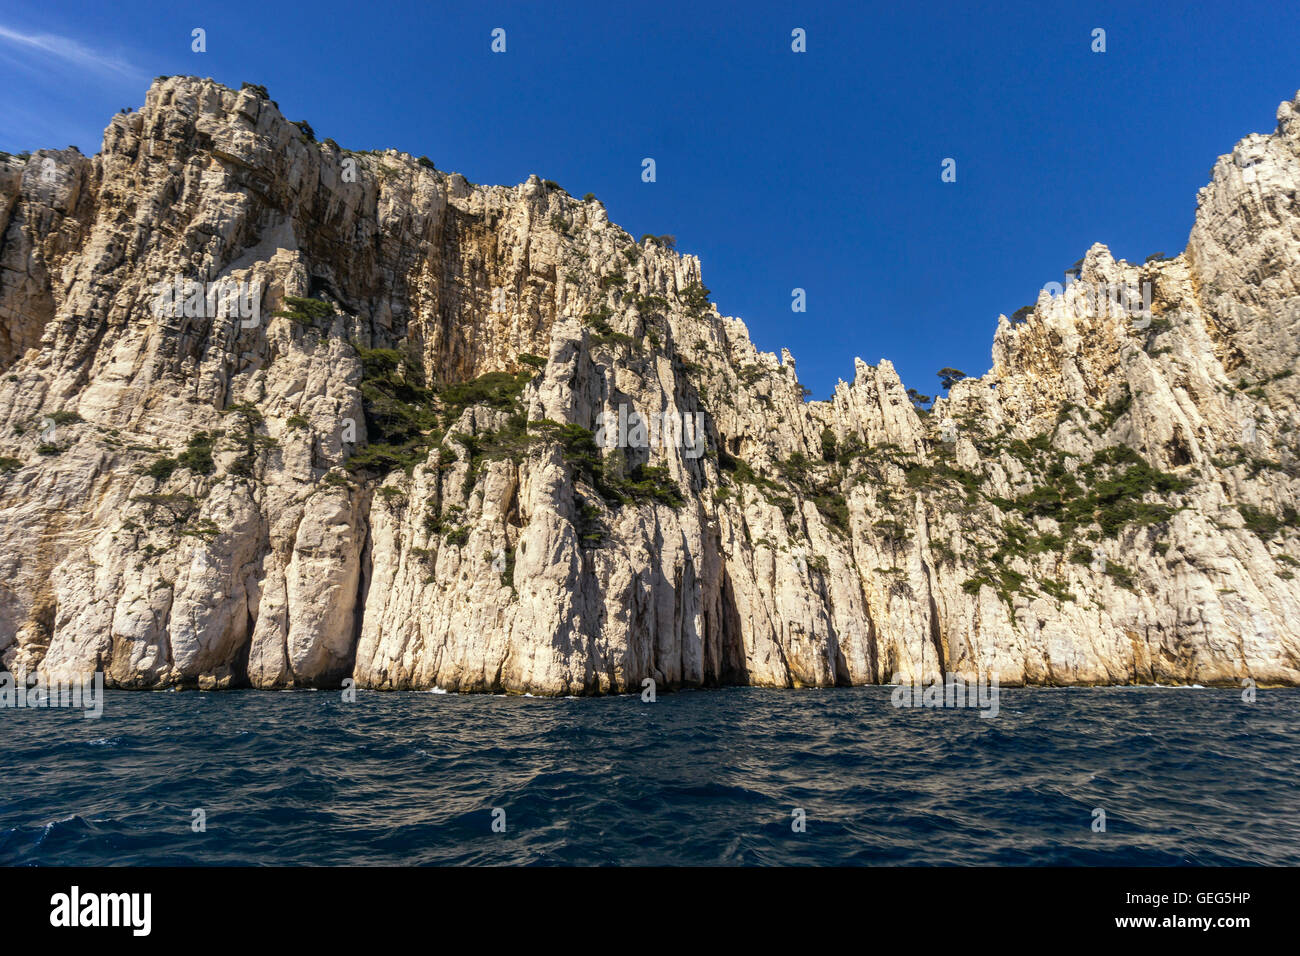 Limestone rocks, La calanque de l’Oule, Massif des Calanques, , Bouches-du-Rhone department, French Riviera, Southern France Stock Photo